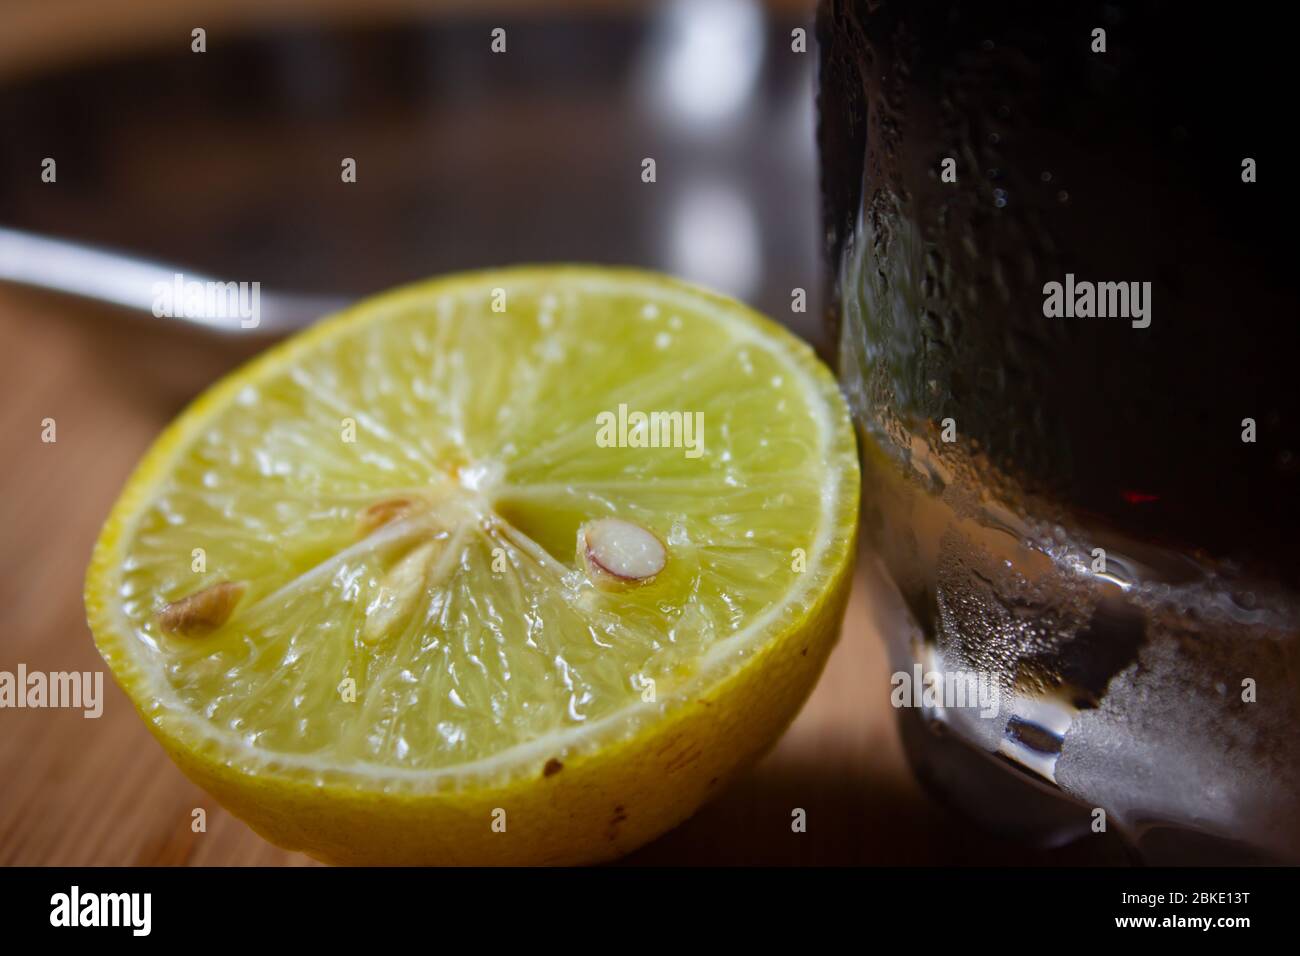 Bel limone giallo tagliato a metà. Alimenti naturali per aumentare l'immunità contro il freddo e l'influenza. Foto Stock